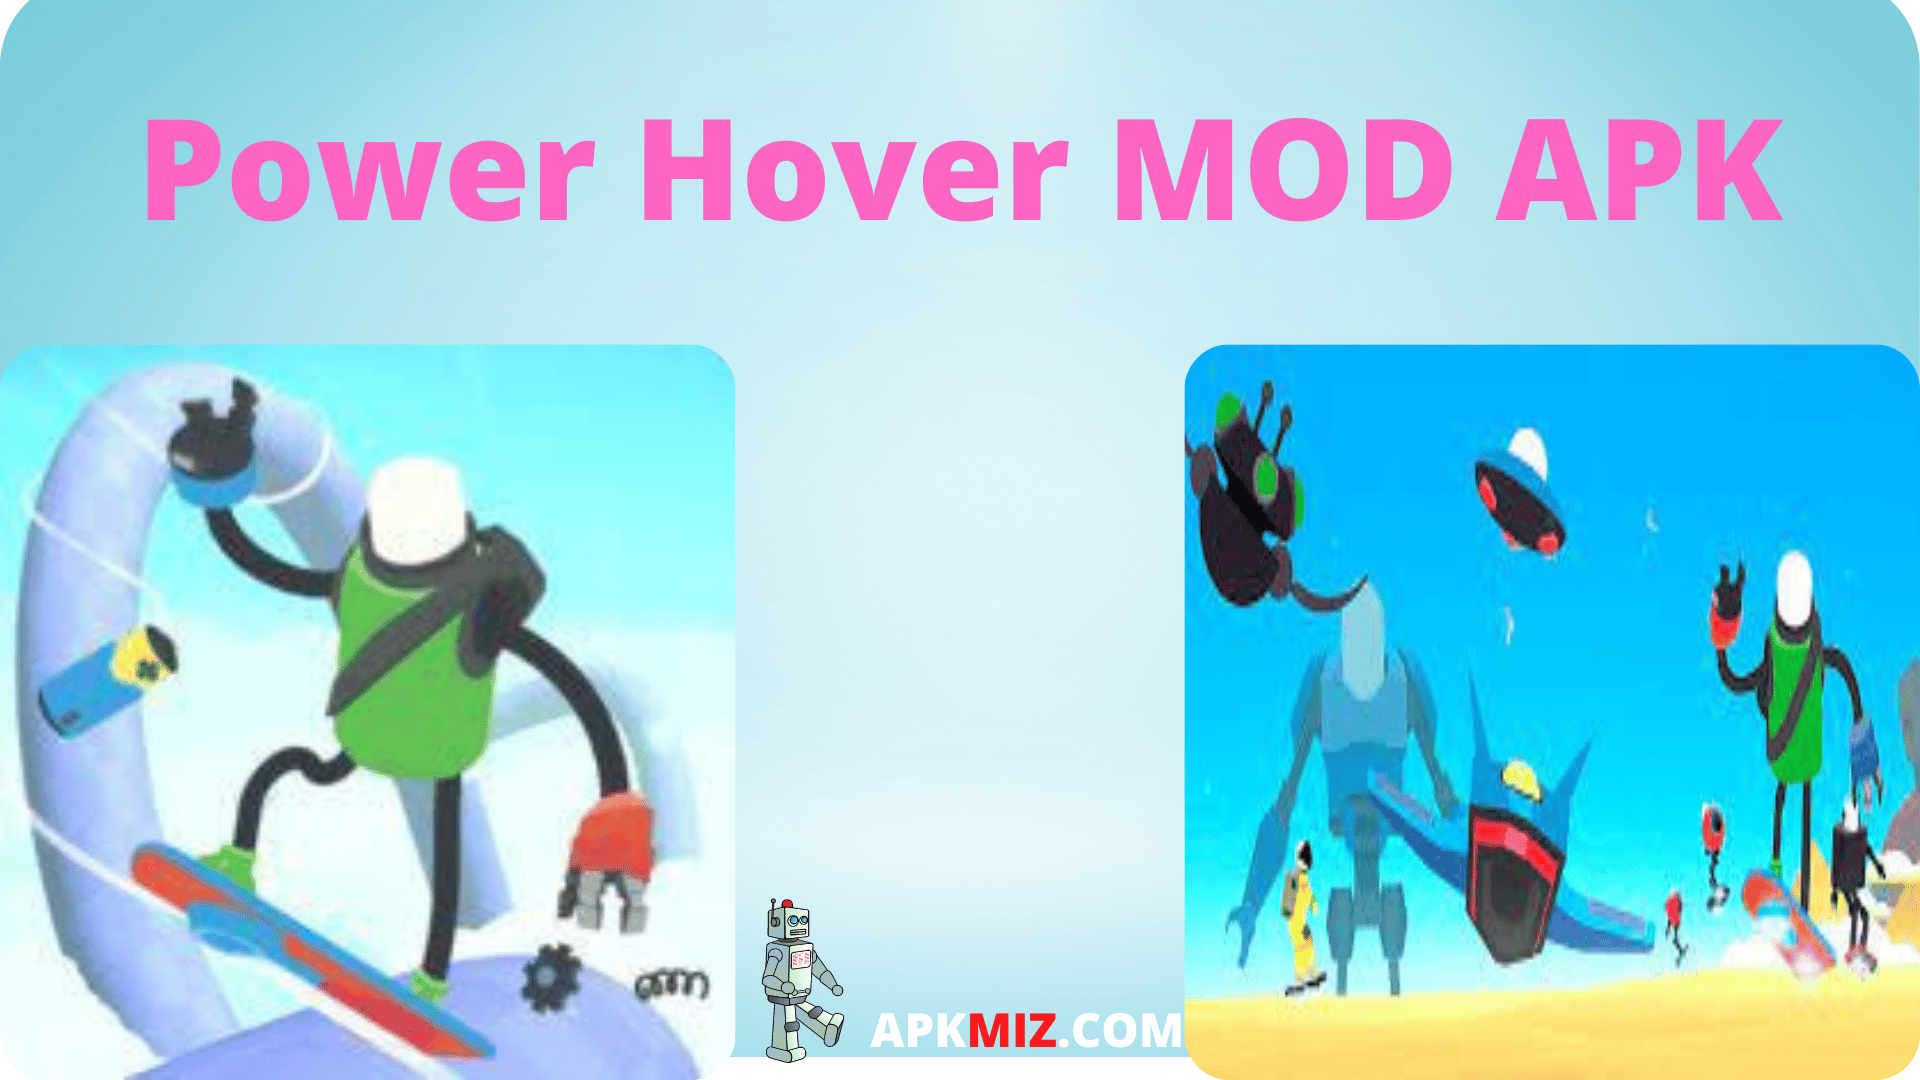 Power Hover MOD APK